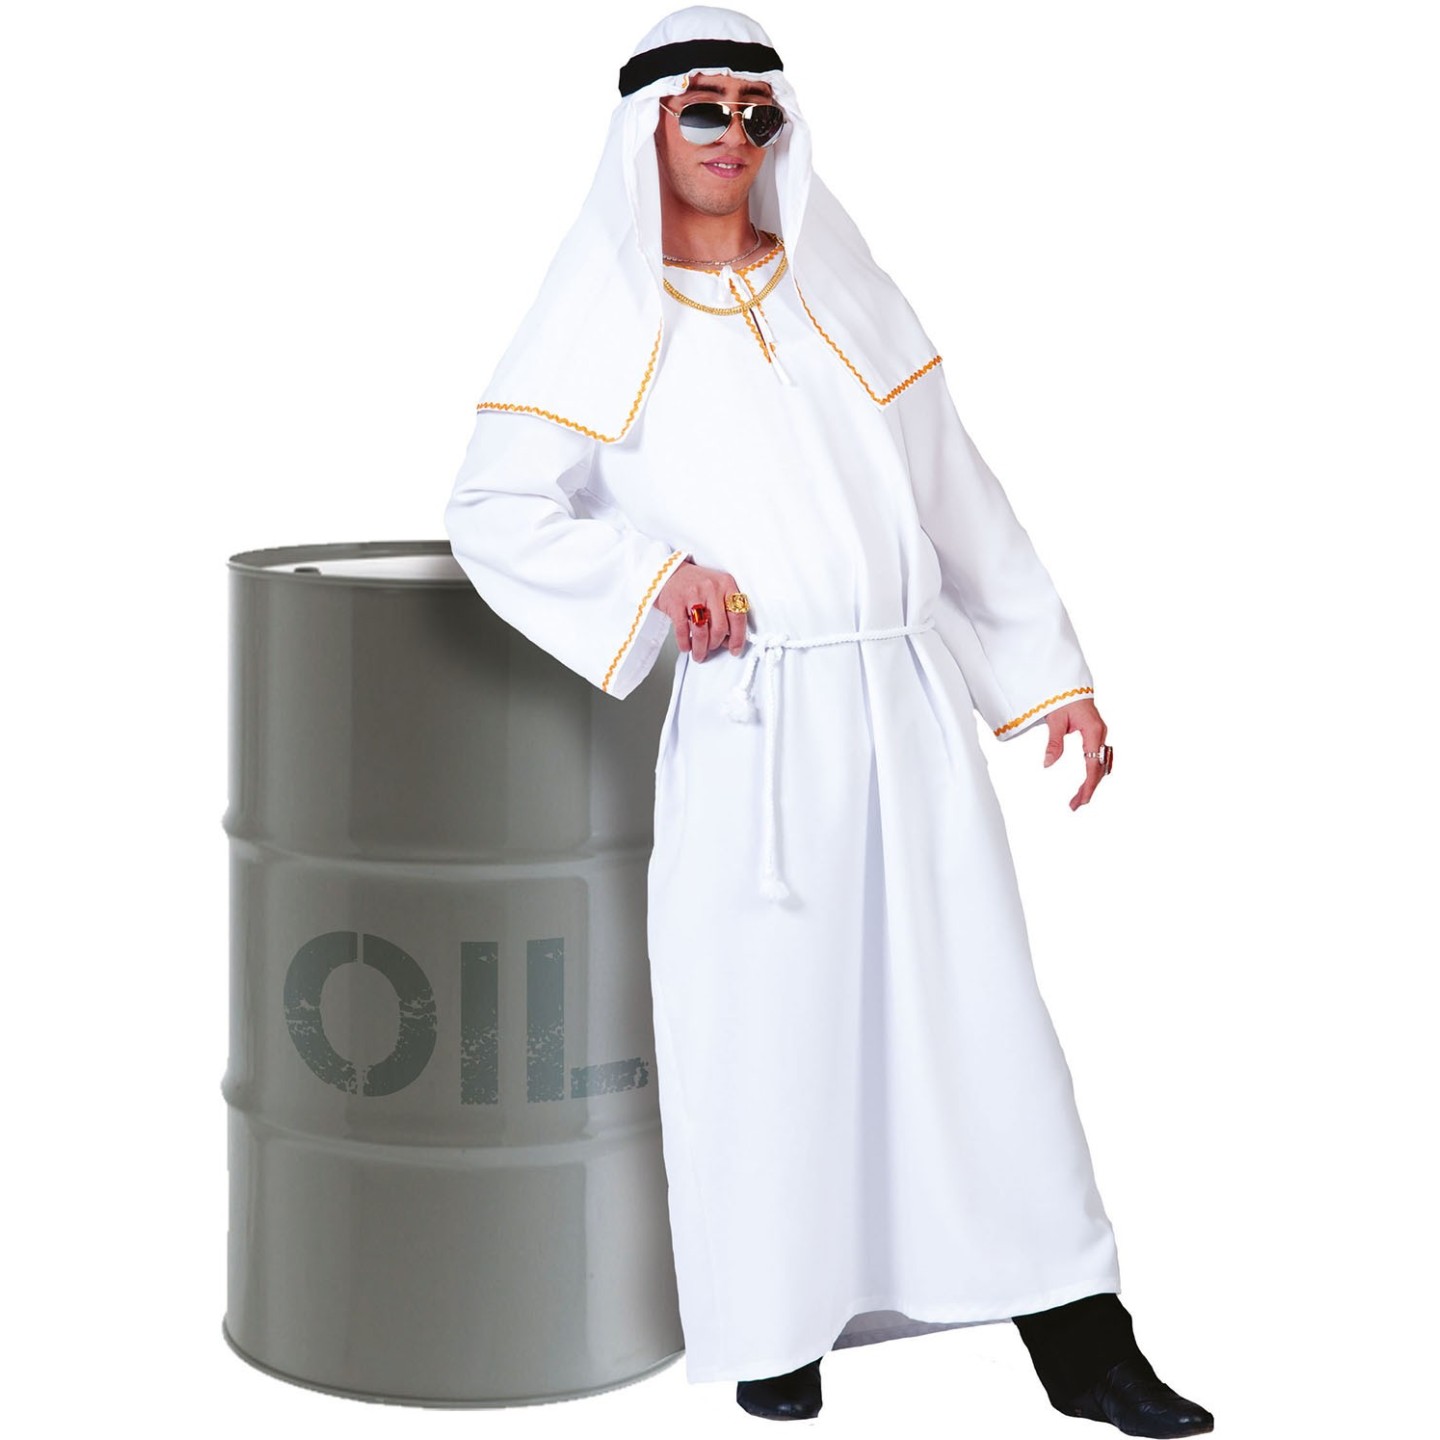 oliesjeik arabier arabische koning kostuum pak 1001 nacht kleding